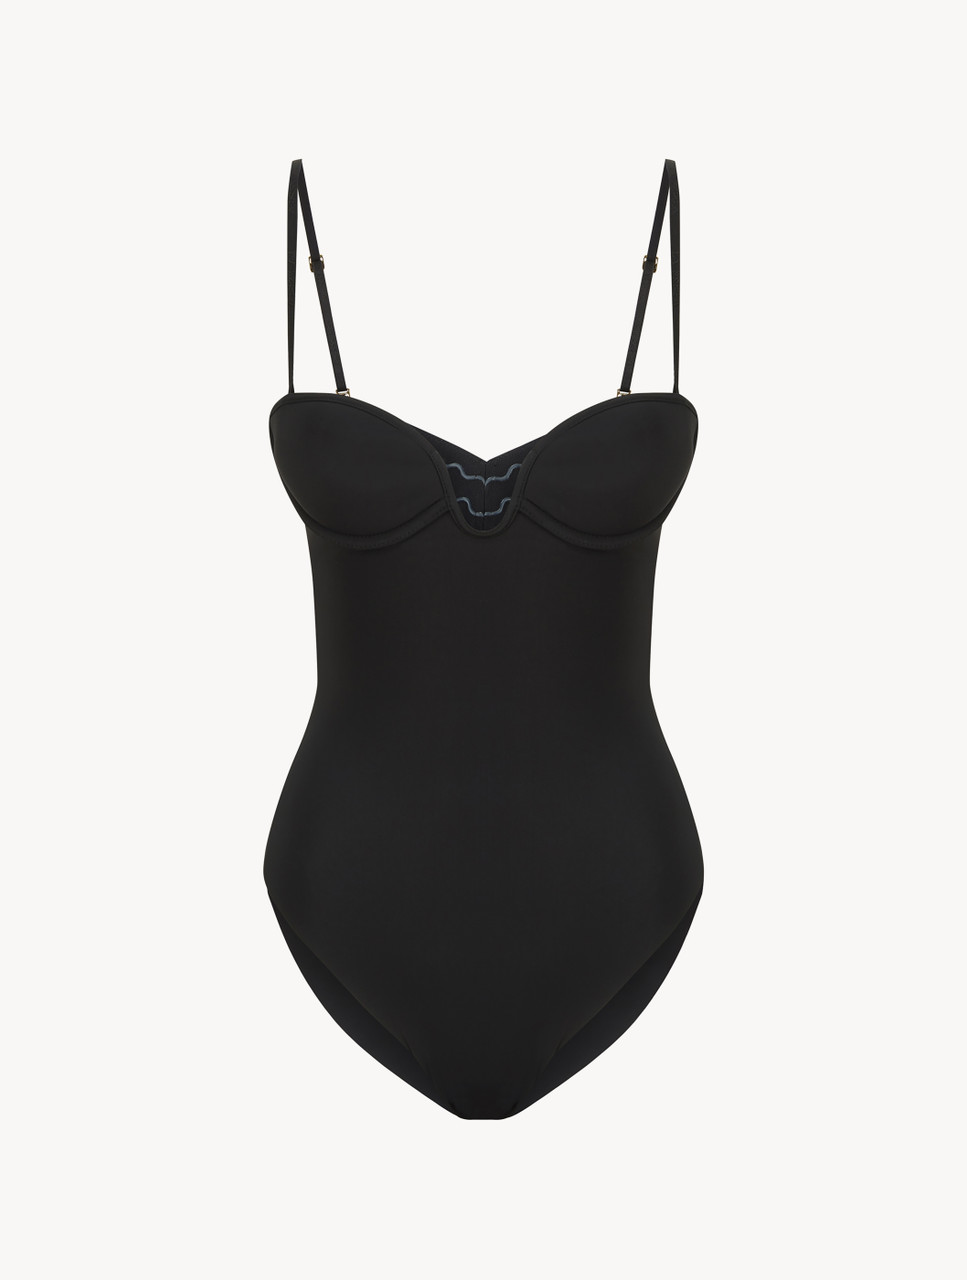 Black underwired padded U-bra bodysuit - ONLINE EXCLUSIVE